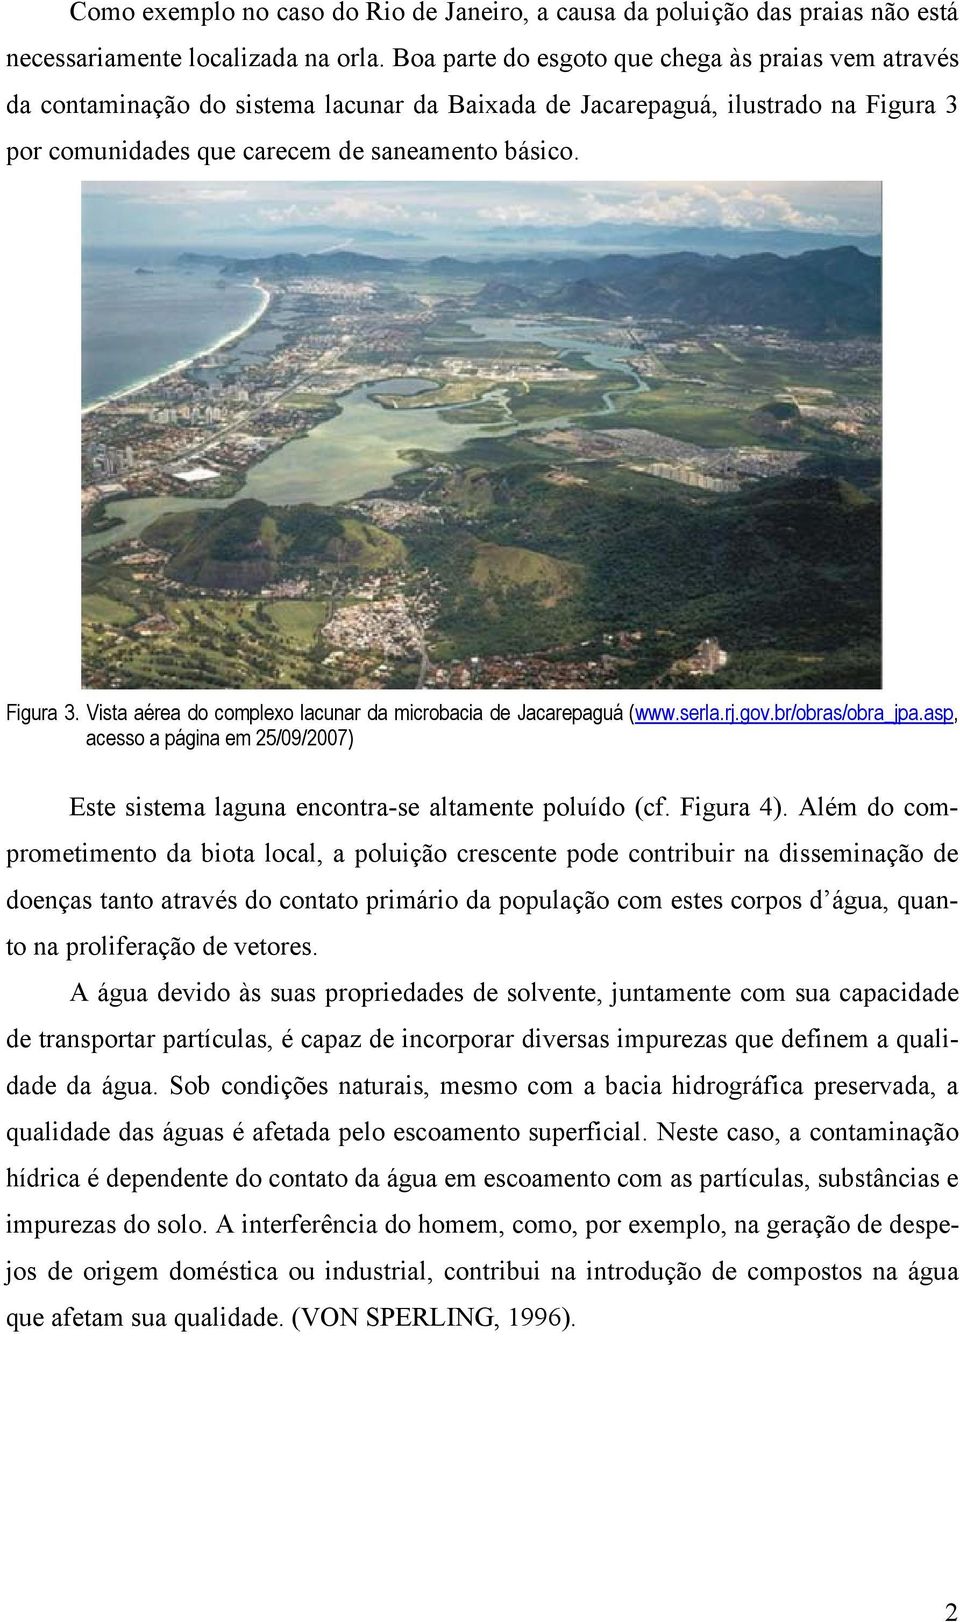 por comunidades que carecem de saneamento básico. Figura 3. Vista aérea do complexo lacunar da microbacia de Jacarepaguá (www.serla.rj.gov.br/obras/obra_jpa.